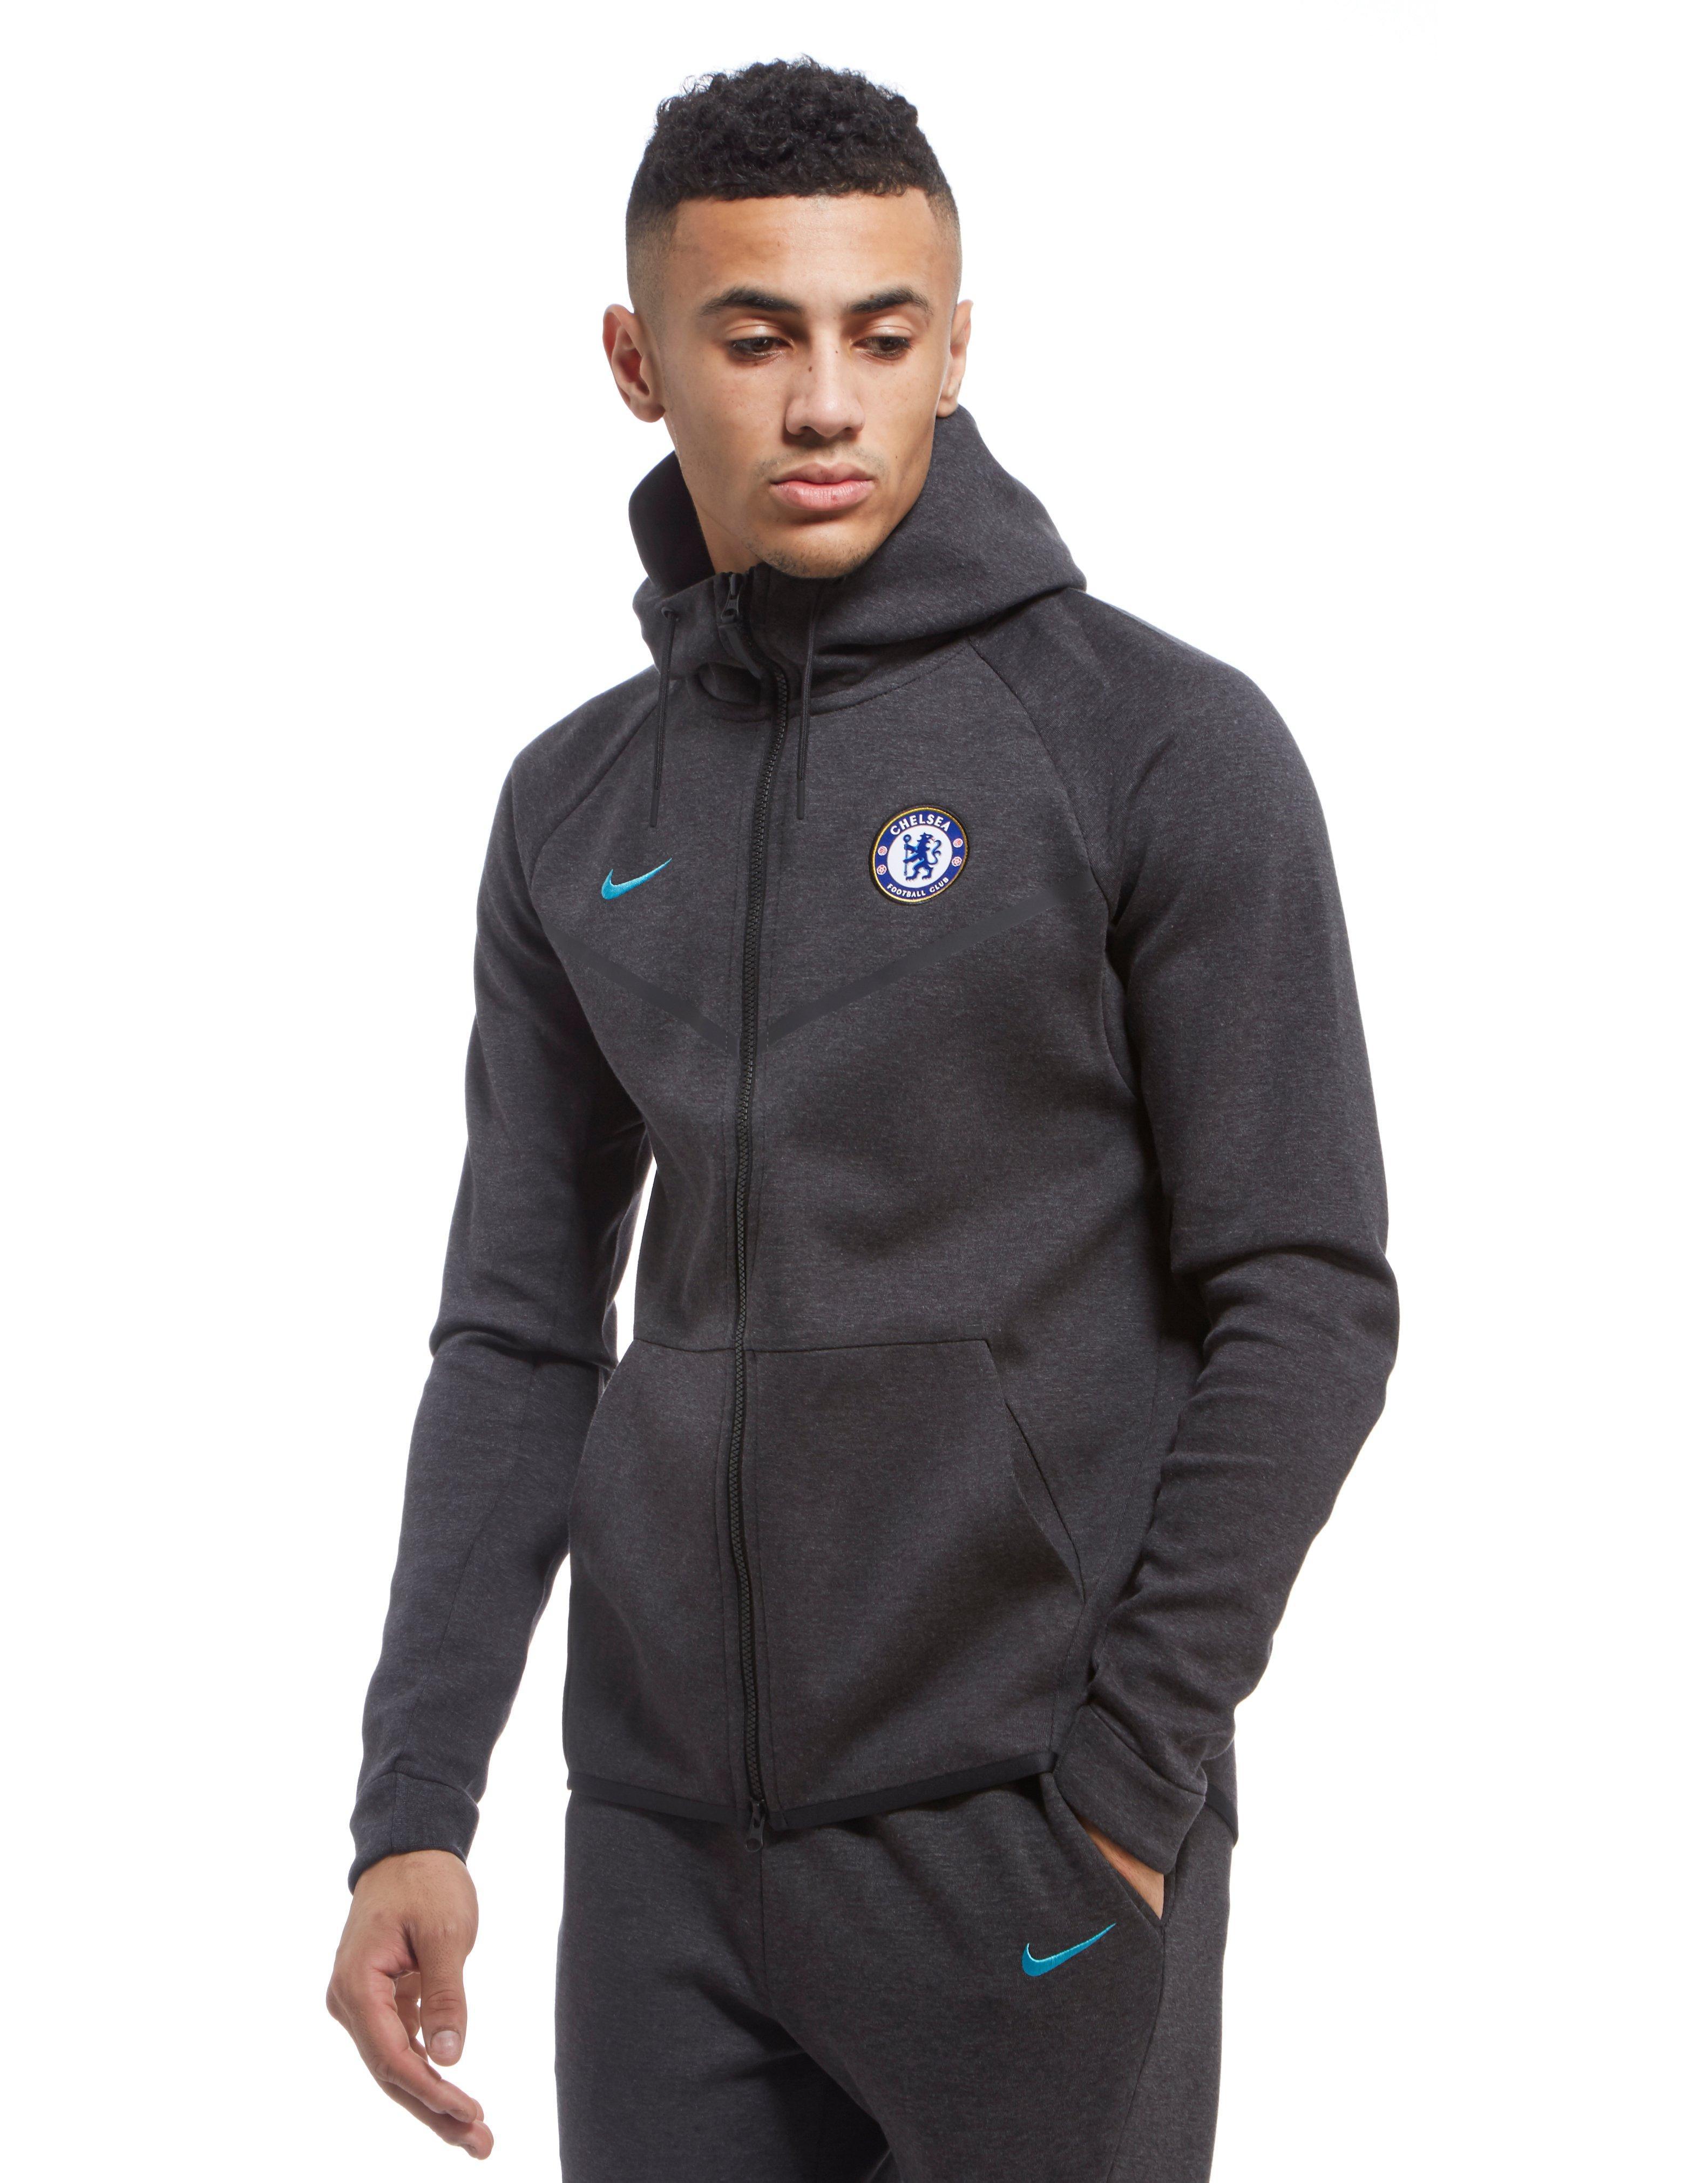 Lyst - Nike Chelsea Fc 2017 Tech Fleece Hoody in Black for Men